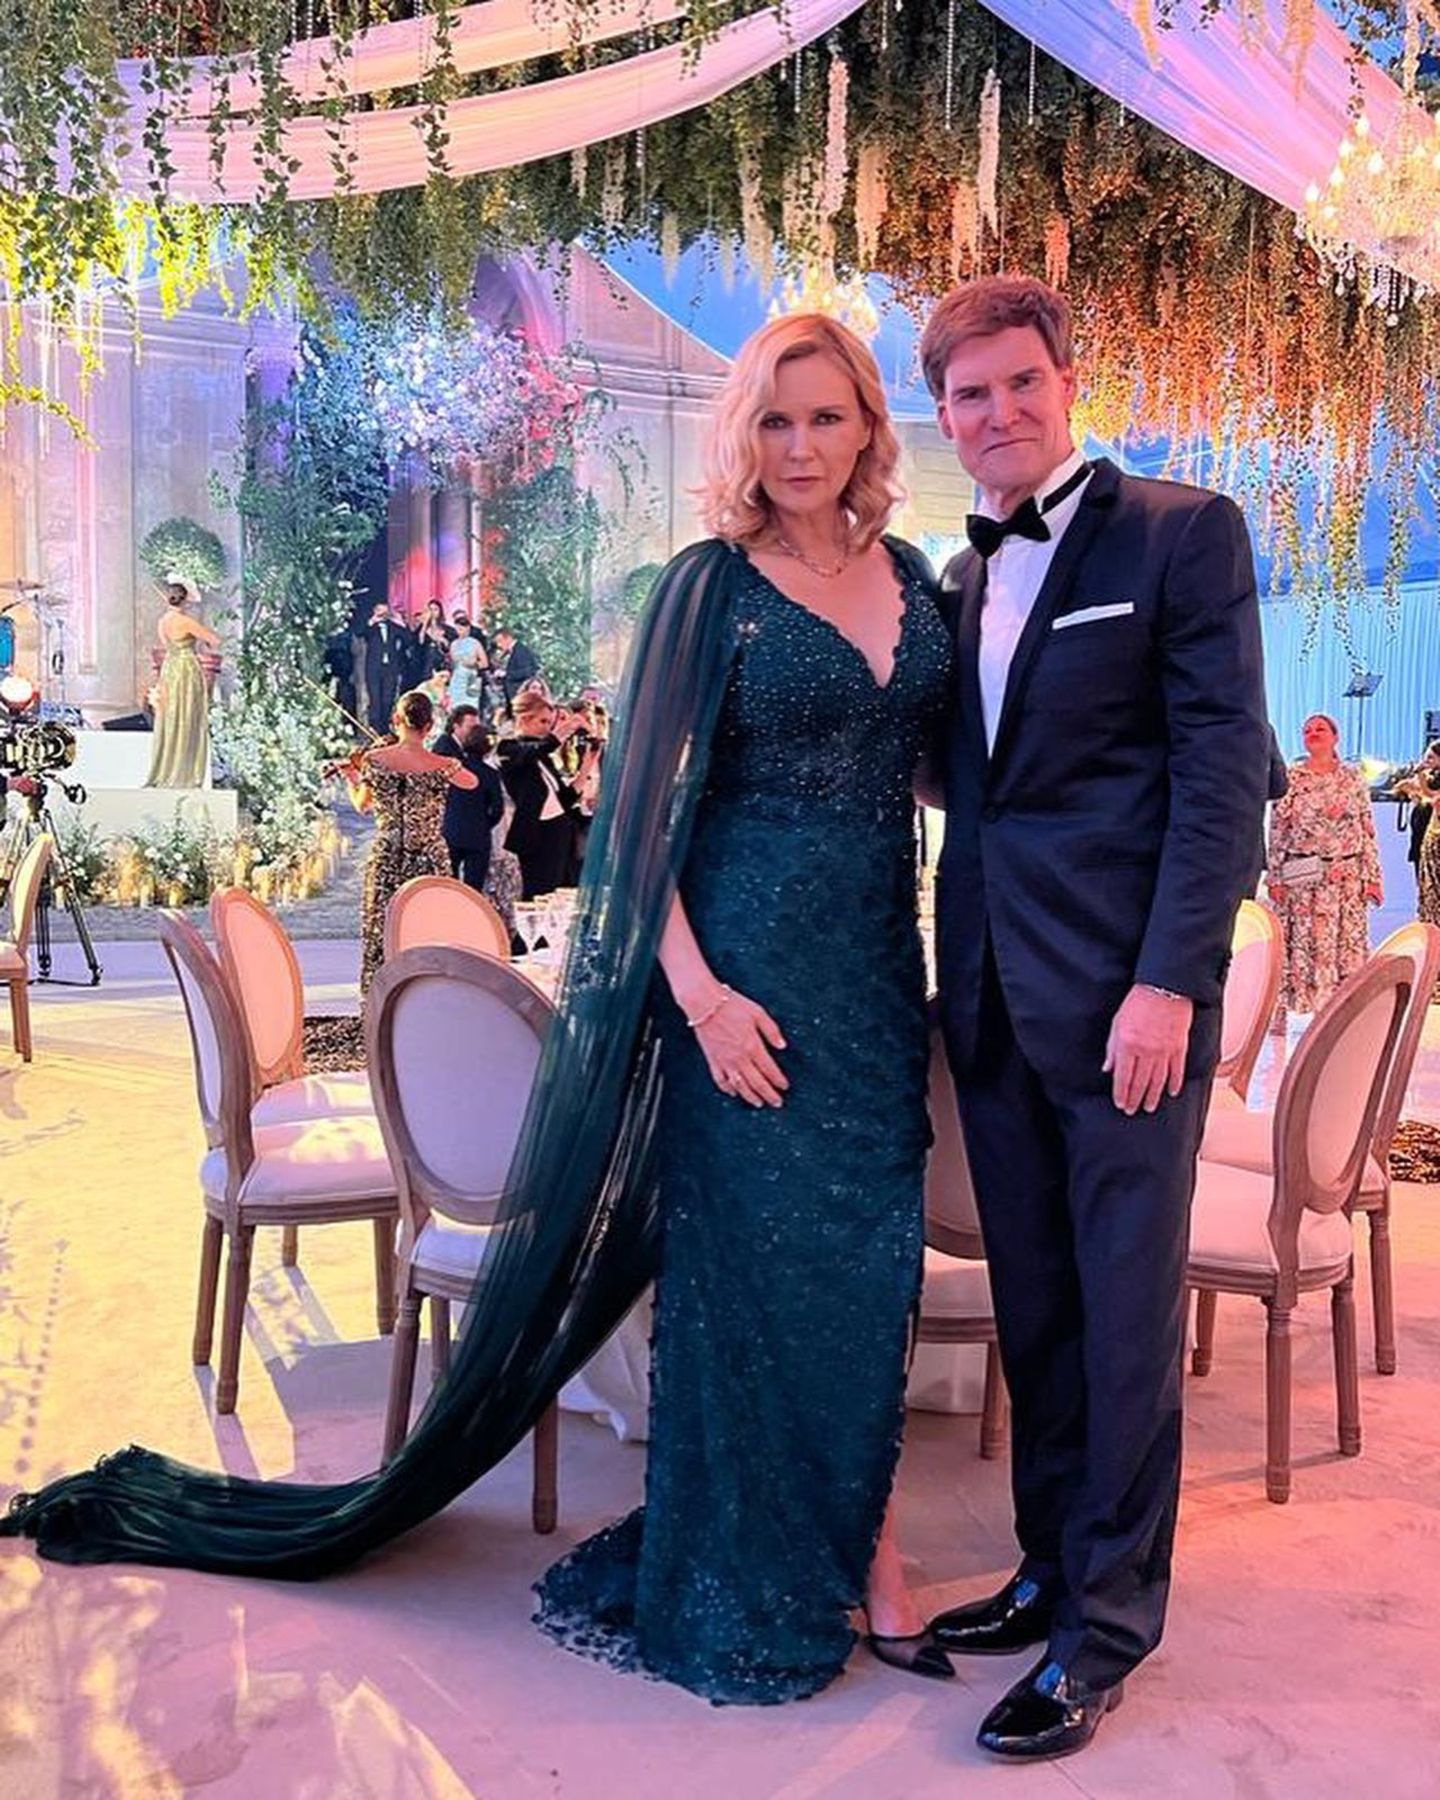 Veronica Ferres und ihr Mann Carsten Maschmeyer sind in Rom zu Gast bei einer Hochzeit von Freunden. Die Looks der beiden sehen dabei mindestens genauso eindrucksvoll aus wie das Setting der Hochzeitslocation.